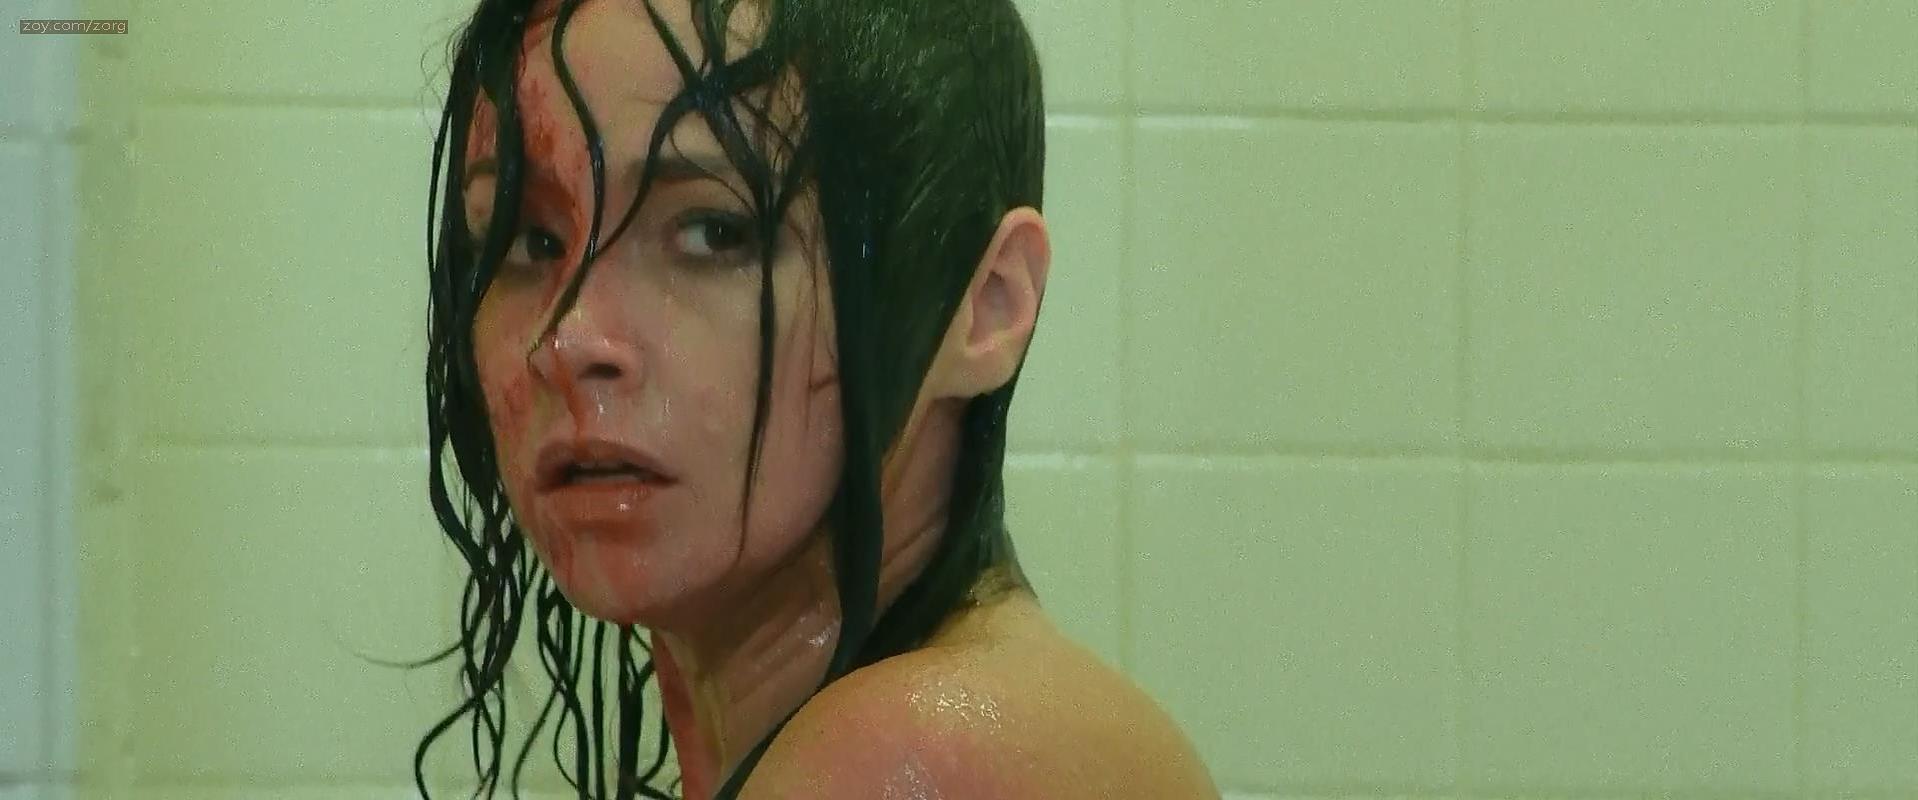 Nude video celebs » Danielle Harris nude - Hachet 3 (2013)